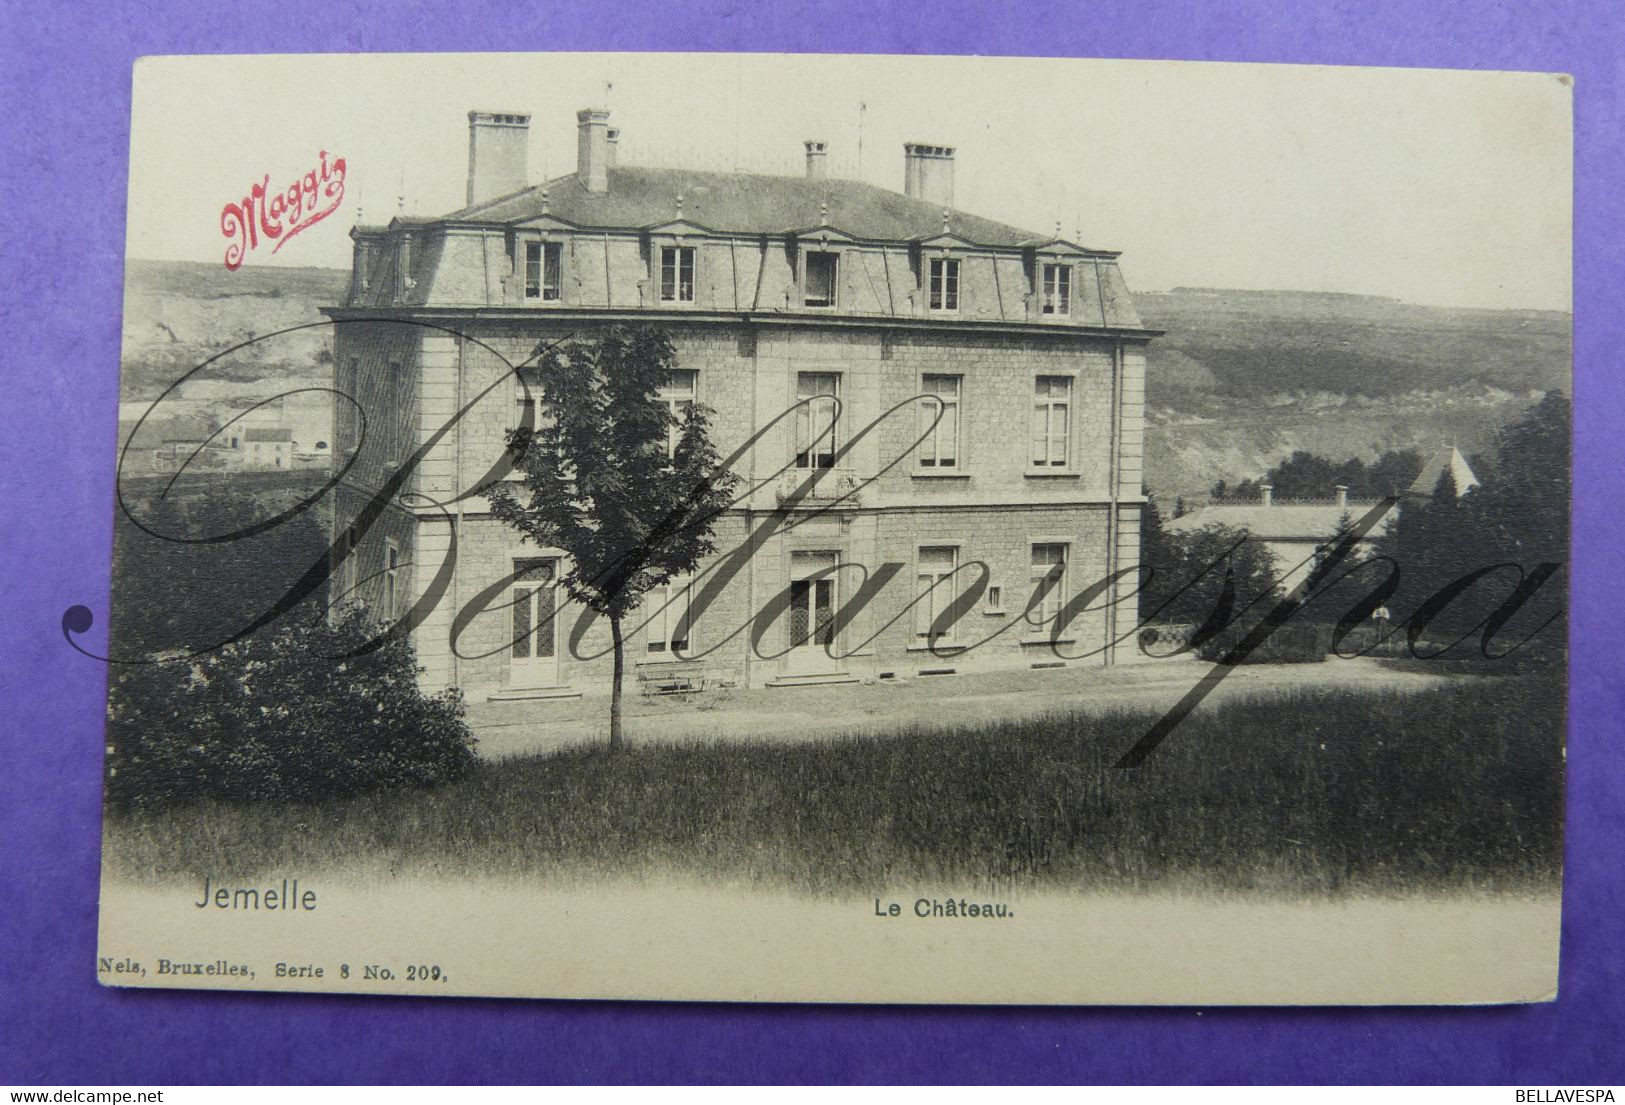 Jemelle Le Chateau Nels Serie 8, N° 209 - Rochefort